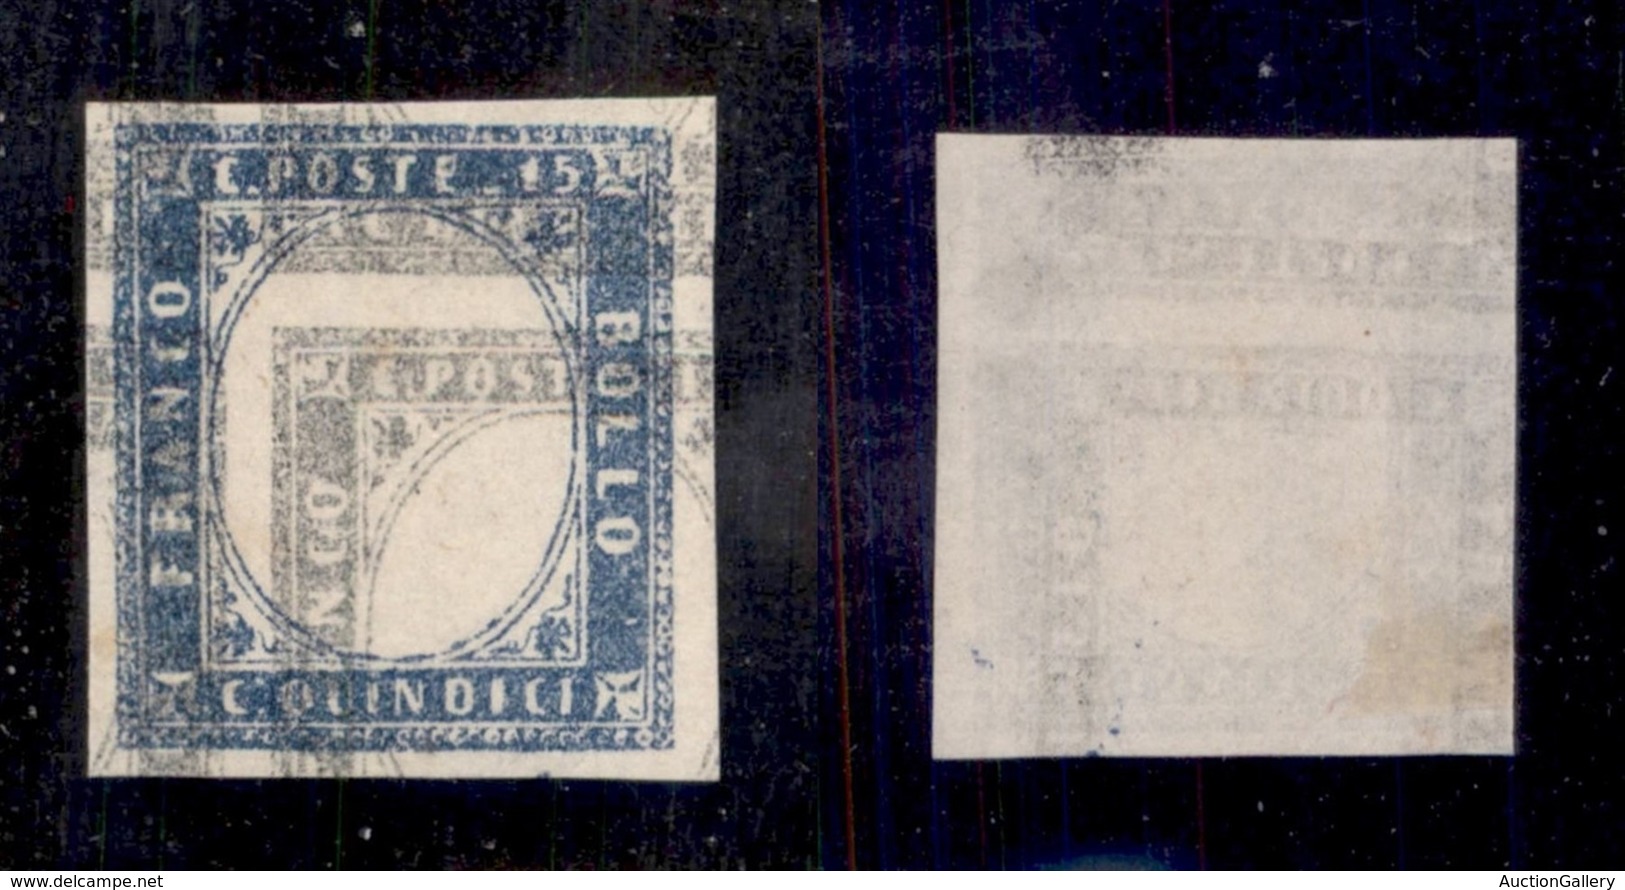 REGNO D'ITALIA - REGNO - 1863 - Prova Di Macchina - 15 Cent (11) - Doppia Stampa ( Azzurro+grigio) - Senza Gomma - Other & Unclassified